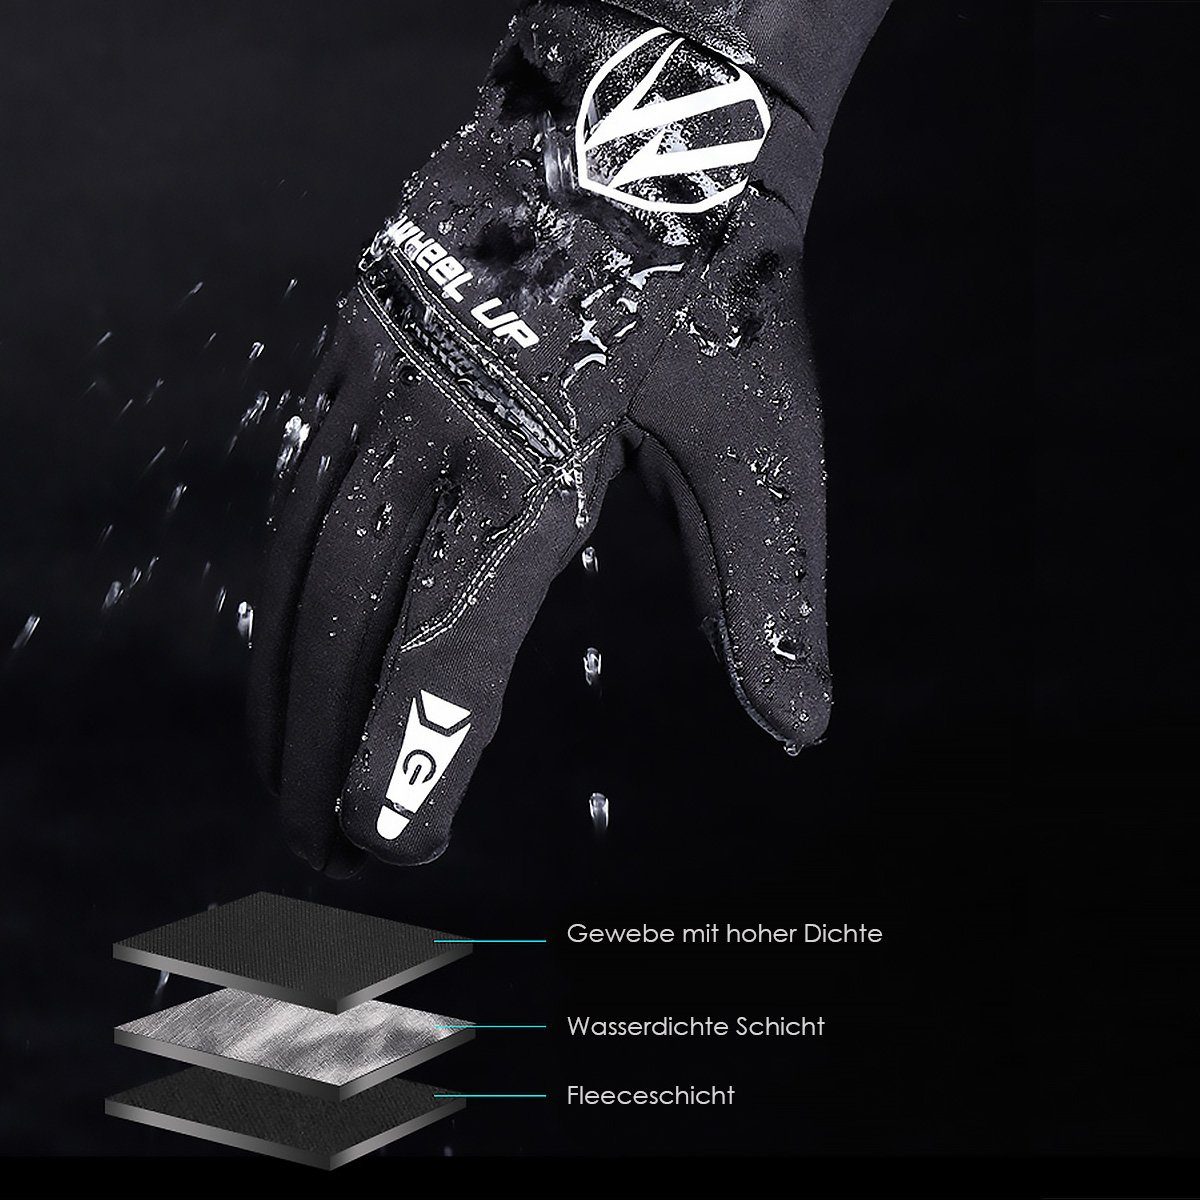 Laufhandschuhe, warme, Sporthandschuhe vielseitige Fahrradhandschuhe mit MidGard Touchscreen